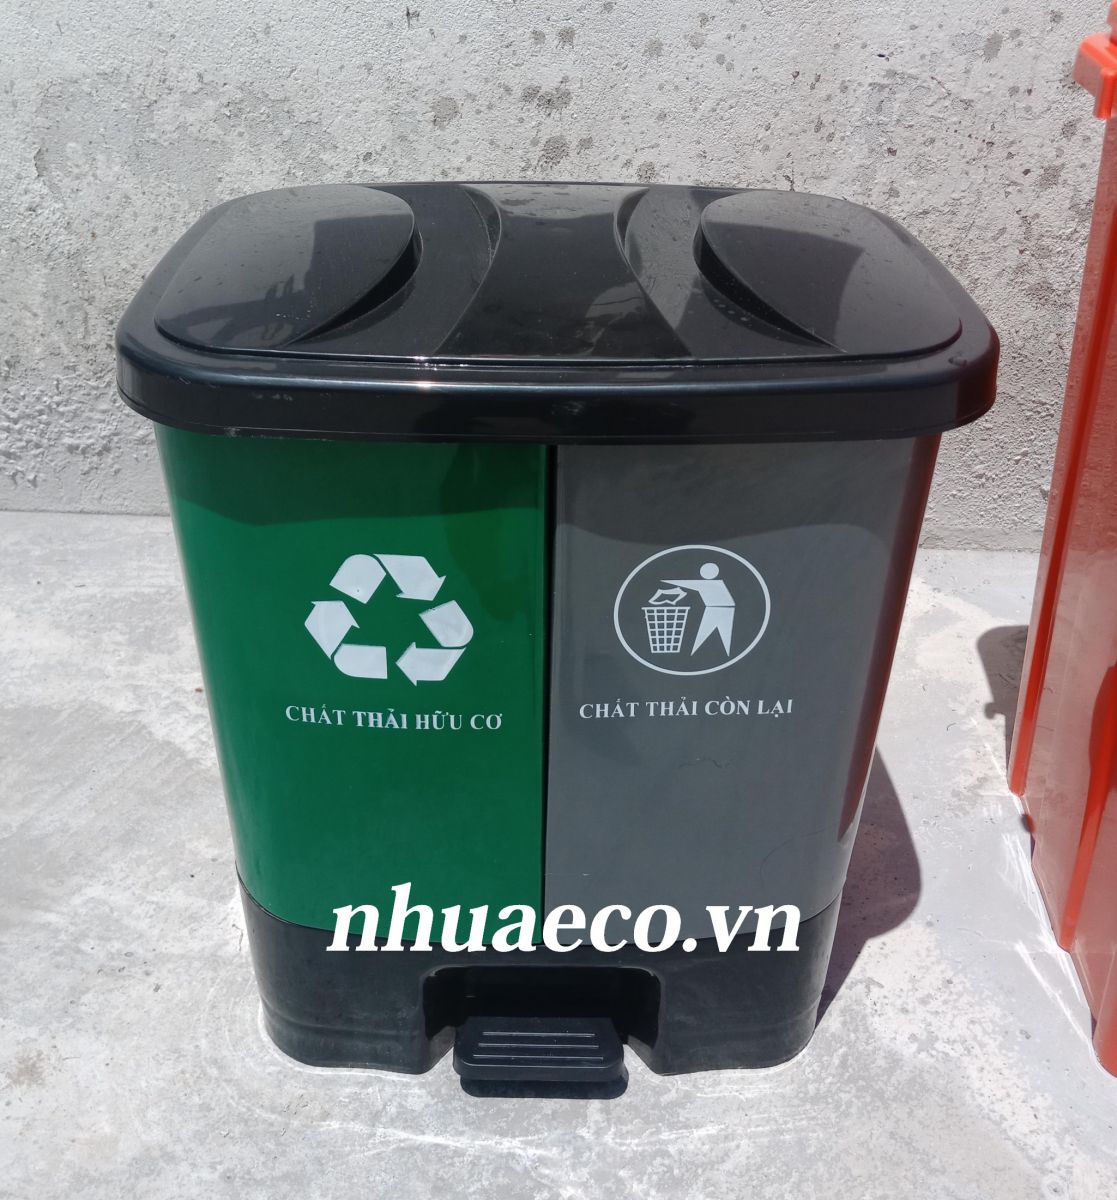 Thùng rác nhựa đạp chân Xanh - Xám 2 ngăn phân loại rác thải